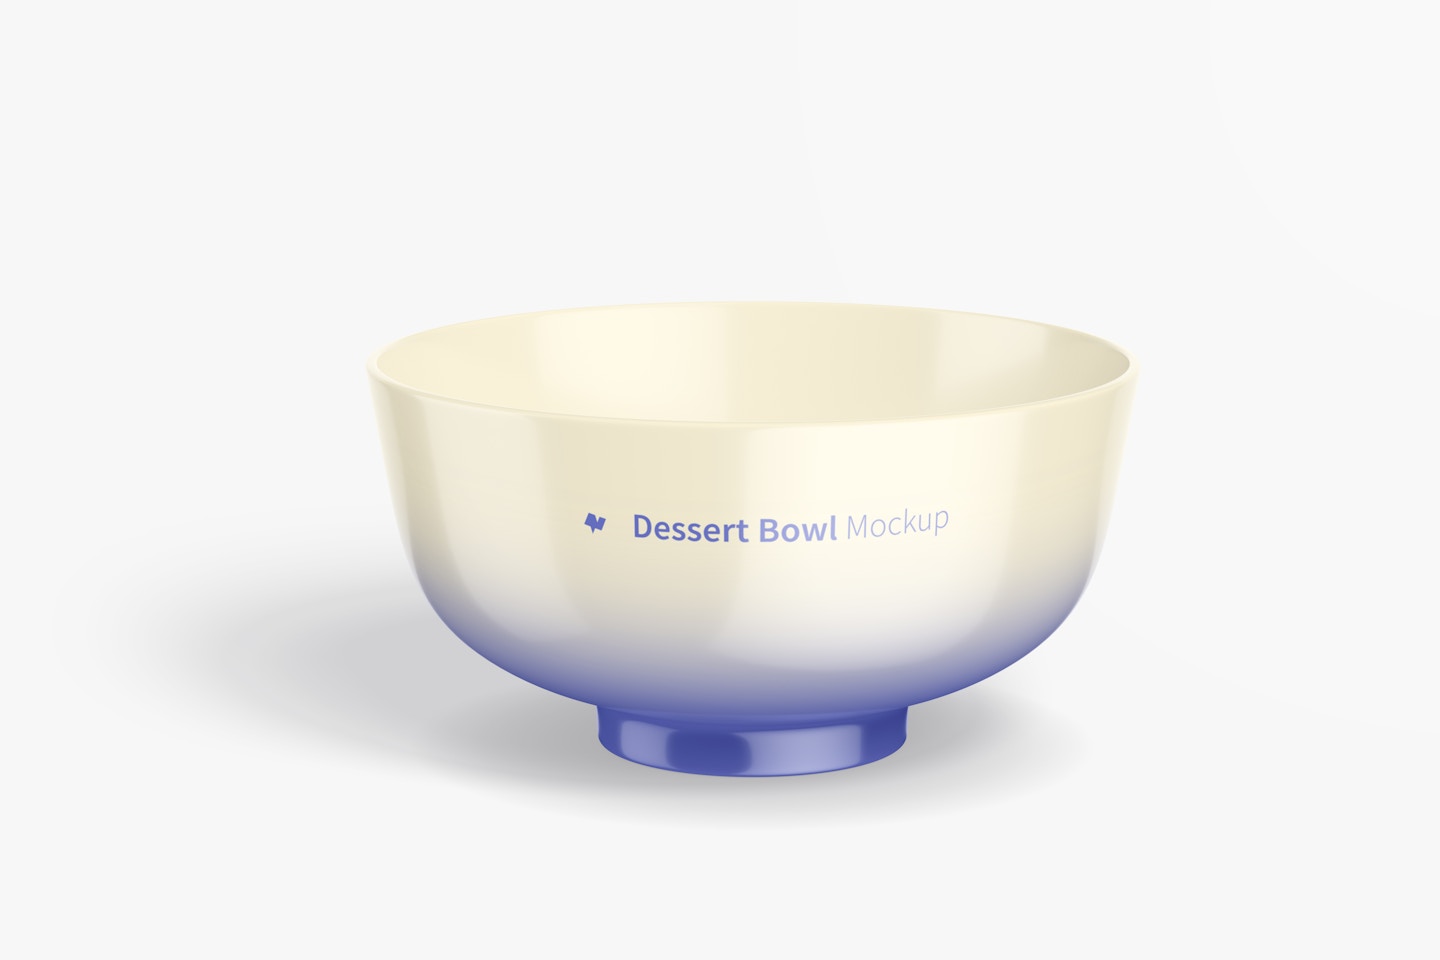 Porcelain Dessert Bowl Mockup, Front View